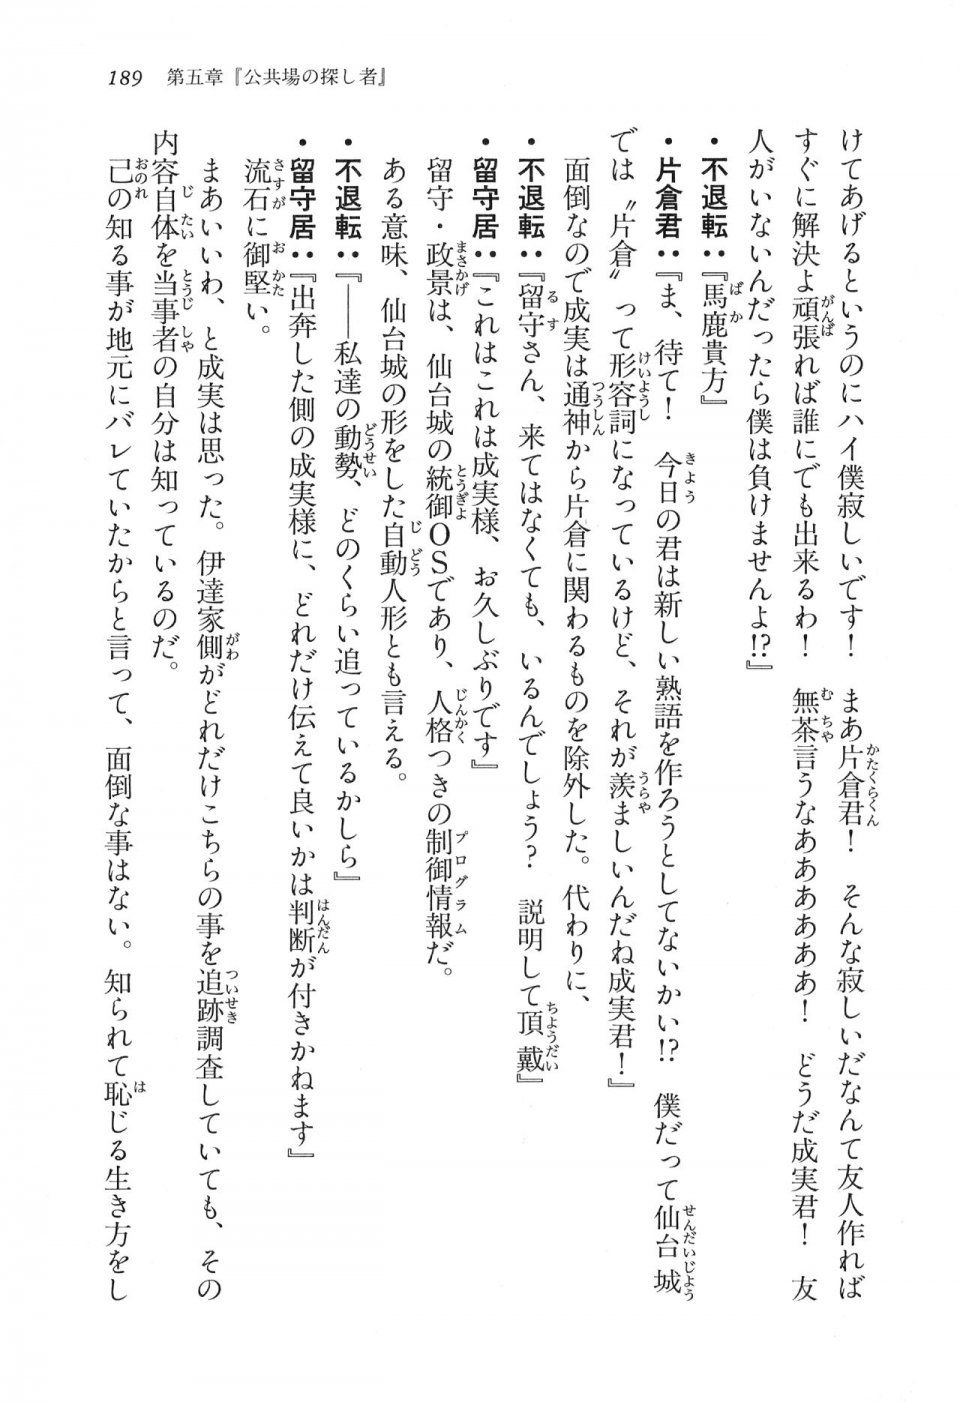 Kyoukai Senjou no Horizon LN Vol 16(7A) - Photo #189